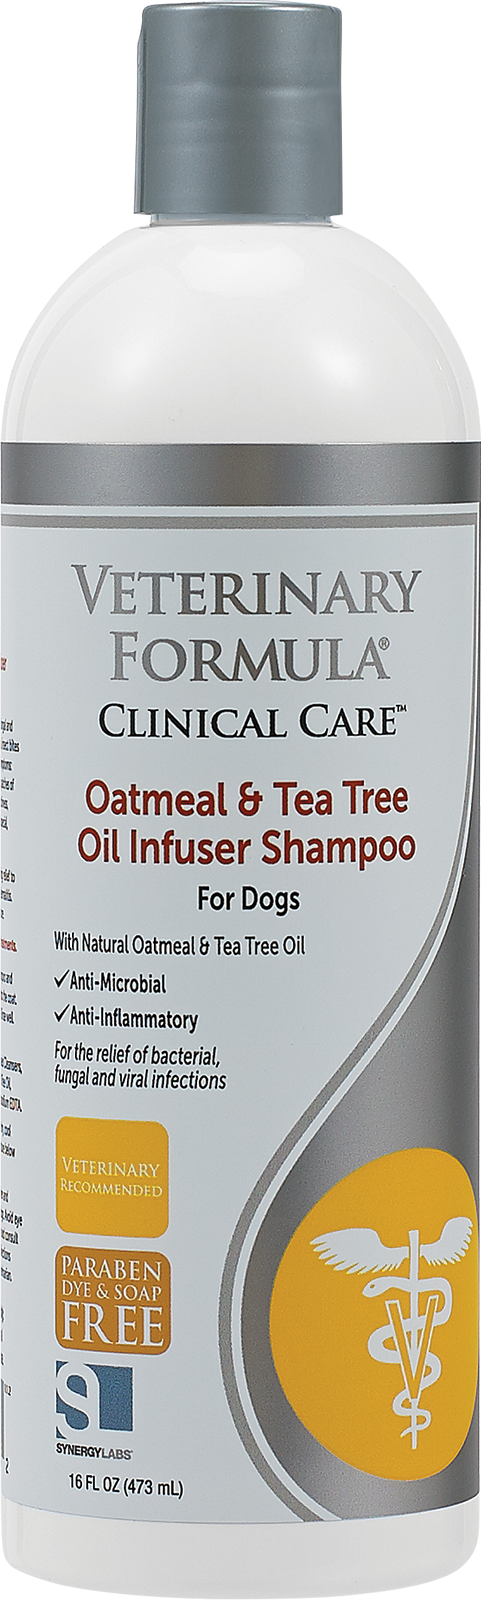 Synergy Labs Oatmeal & Tea Tree Oil Infuser Shampoo